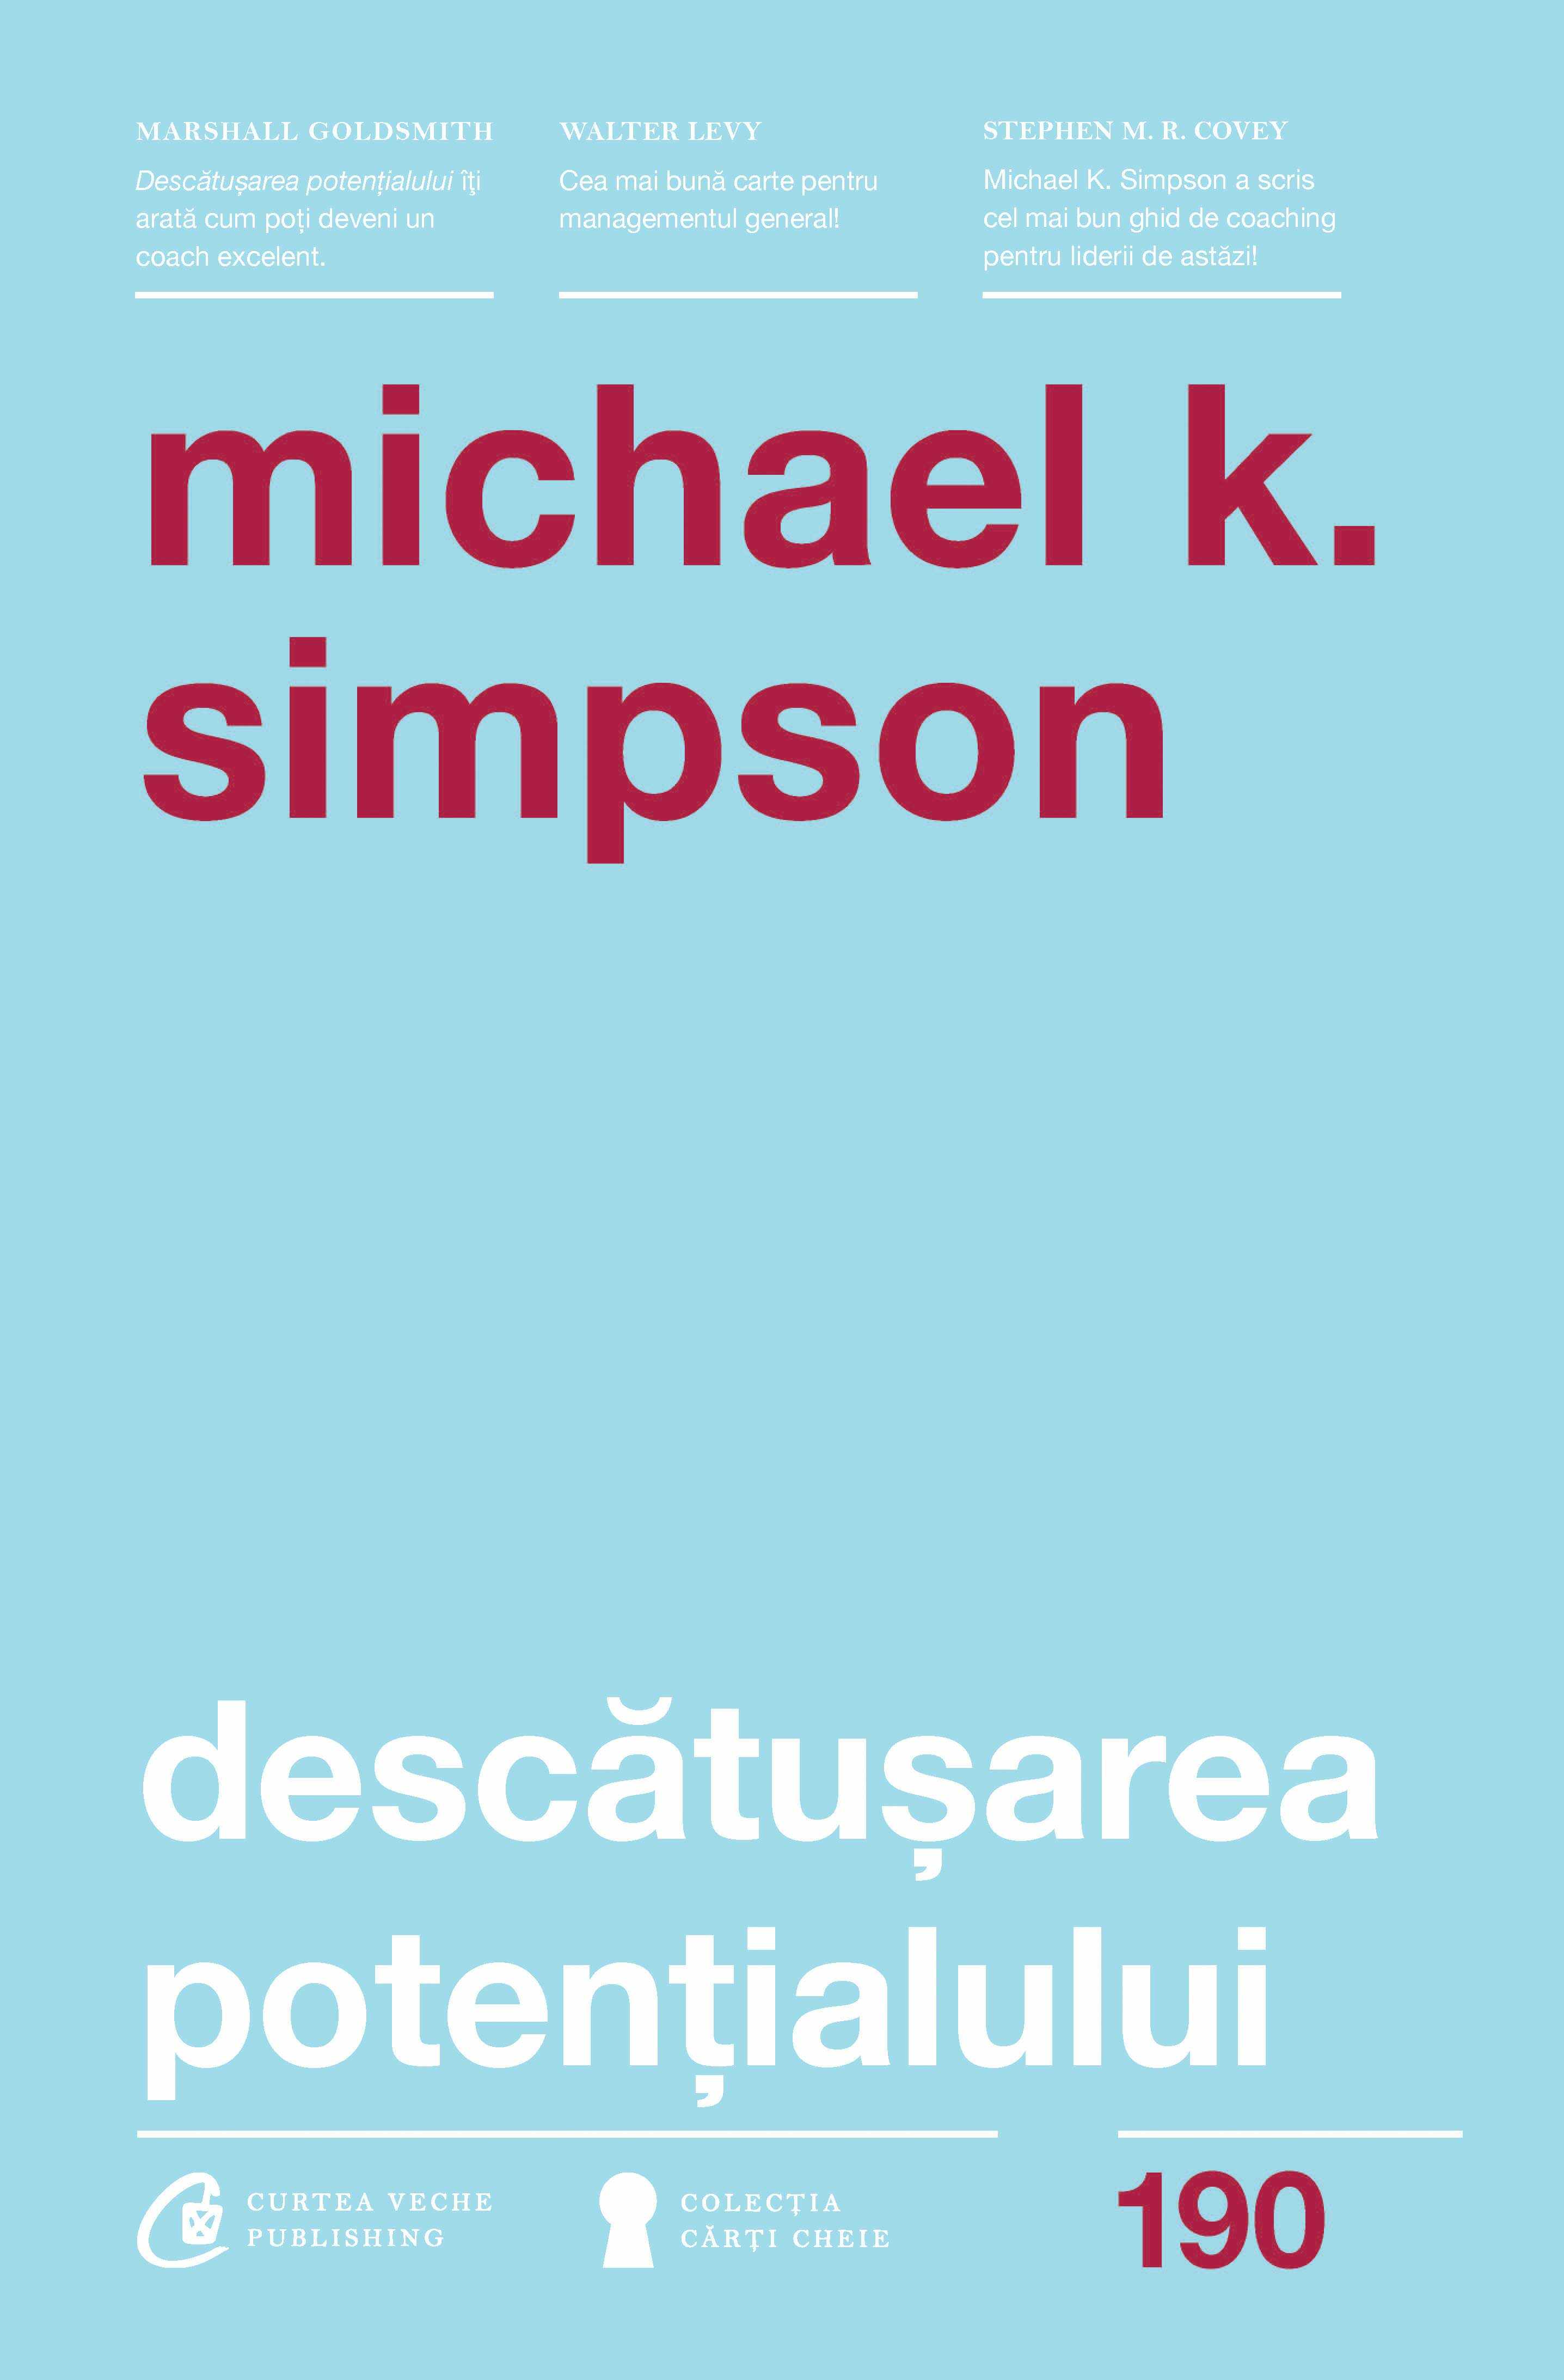 Descatusarea potentialului | Michael K. Simpson